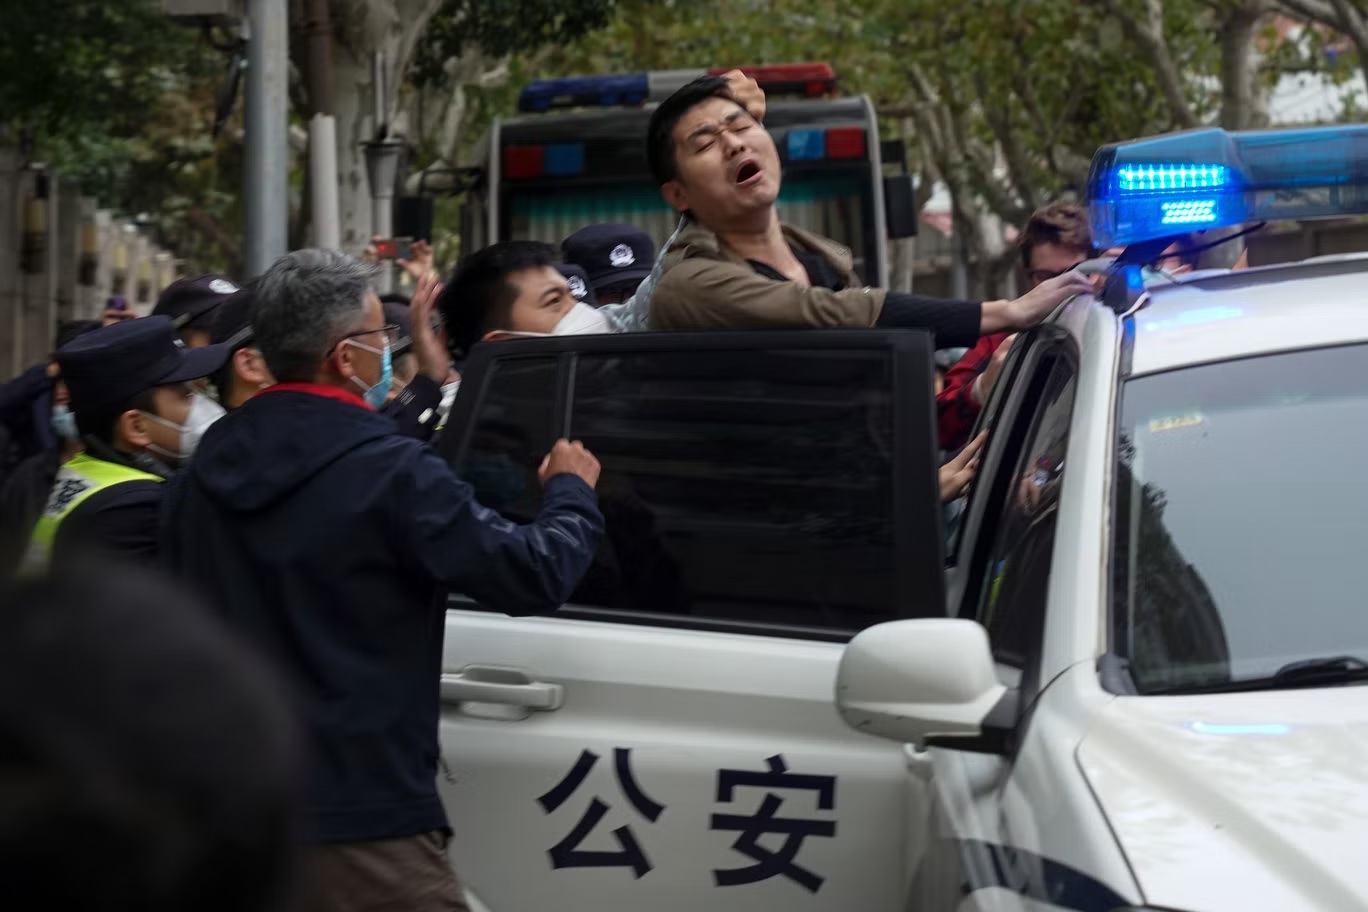 القبض على متظاهر خلال احتجاج في شوارع شنغهاي يوم الأحد (أ ب)